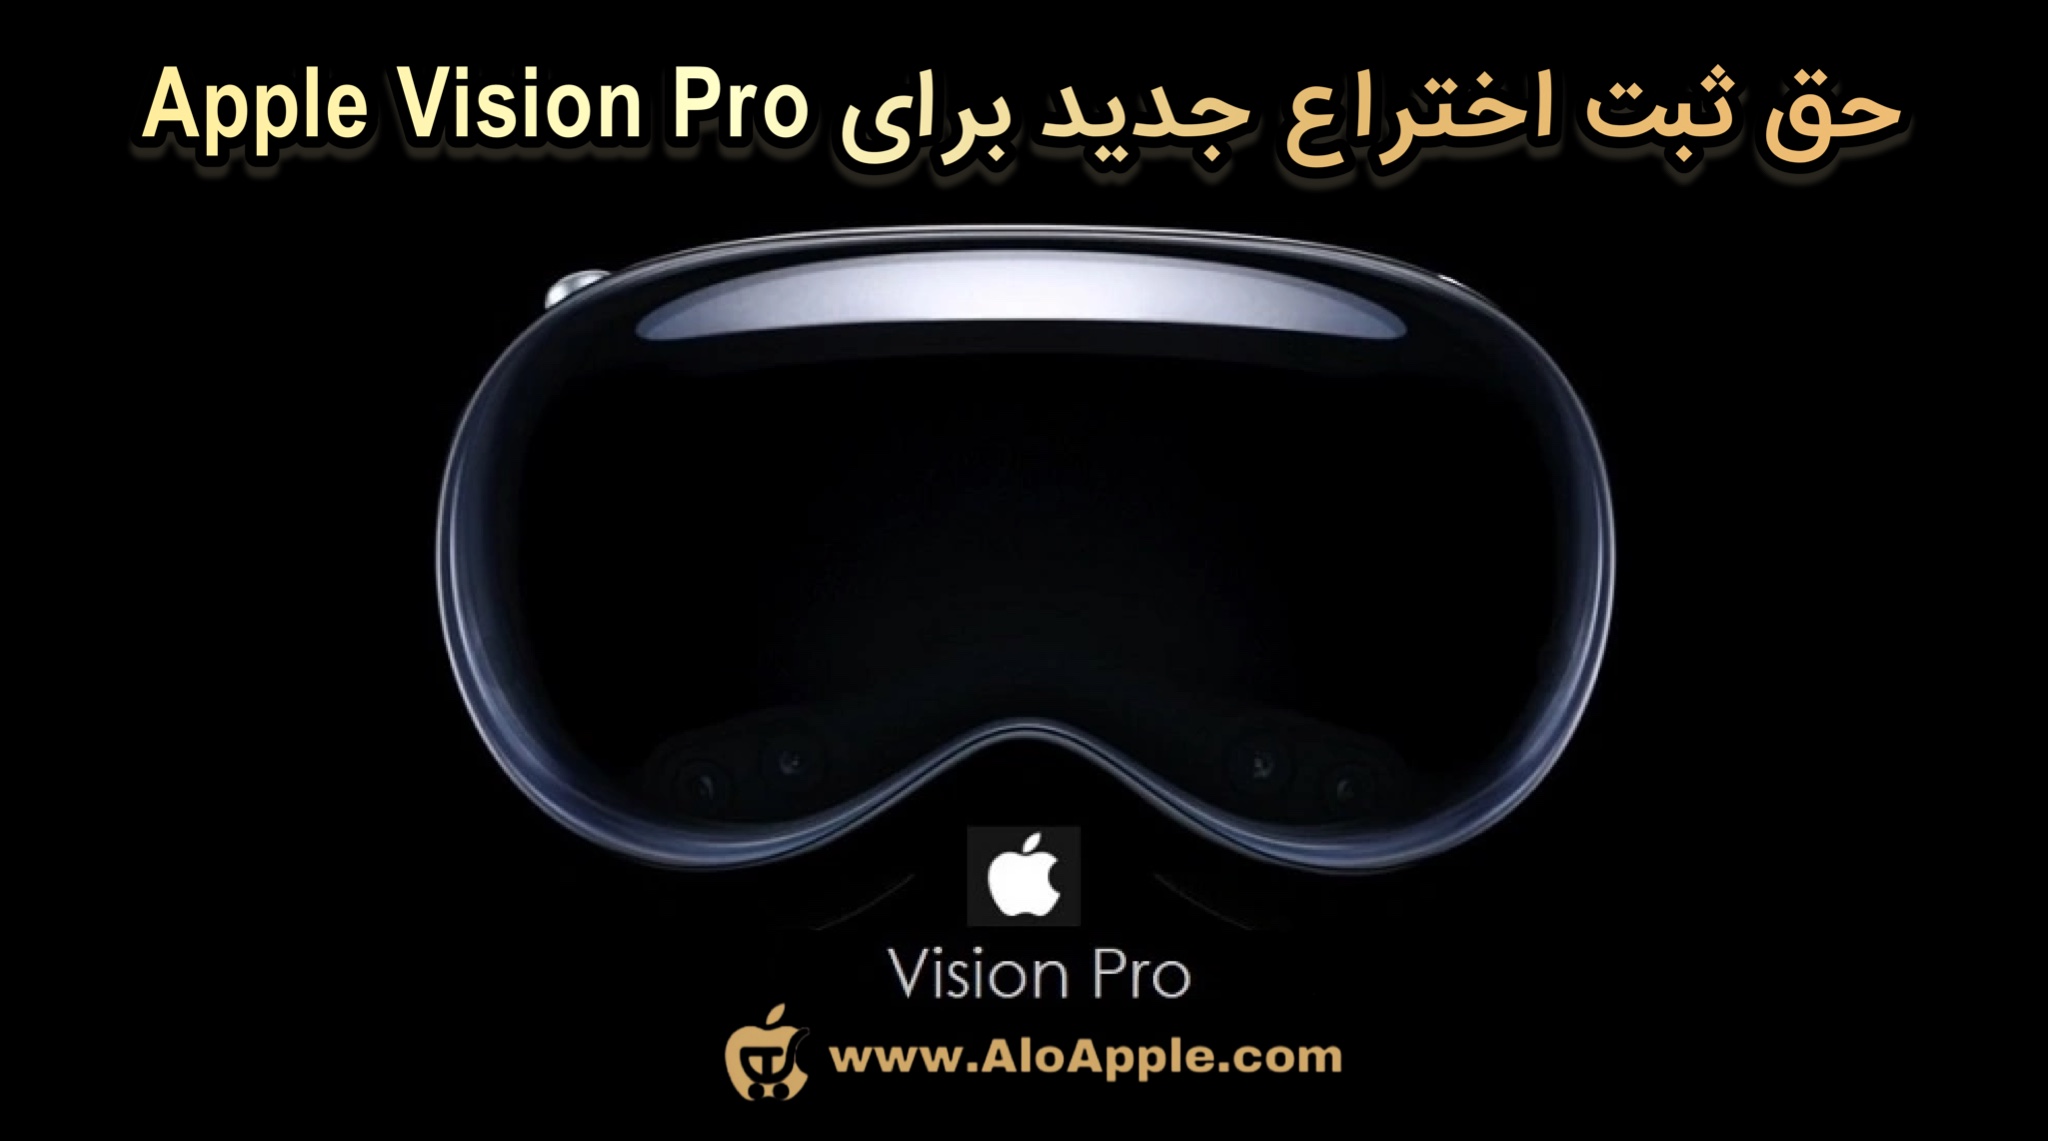 حق ثبت اختراع جدید برای Apple Vision Pro